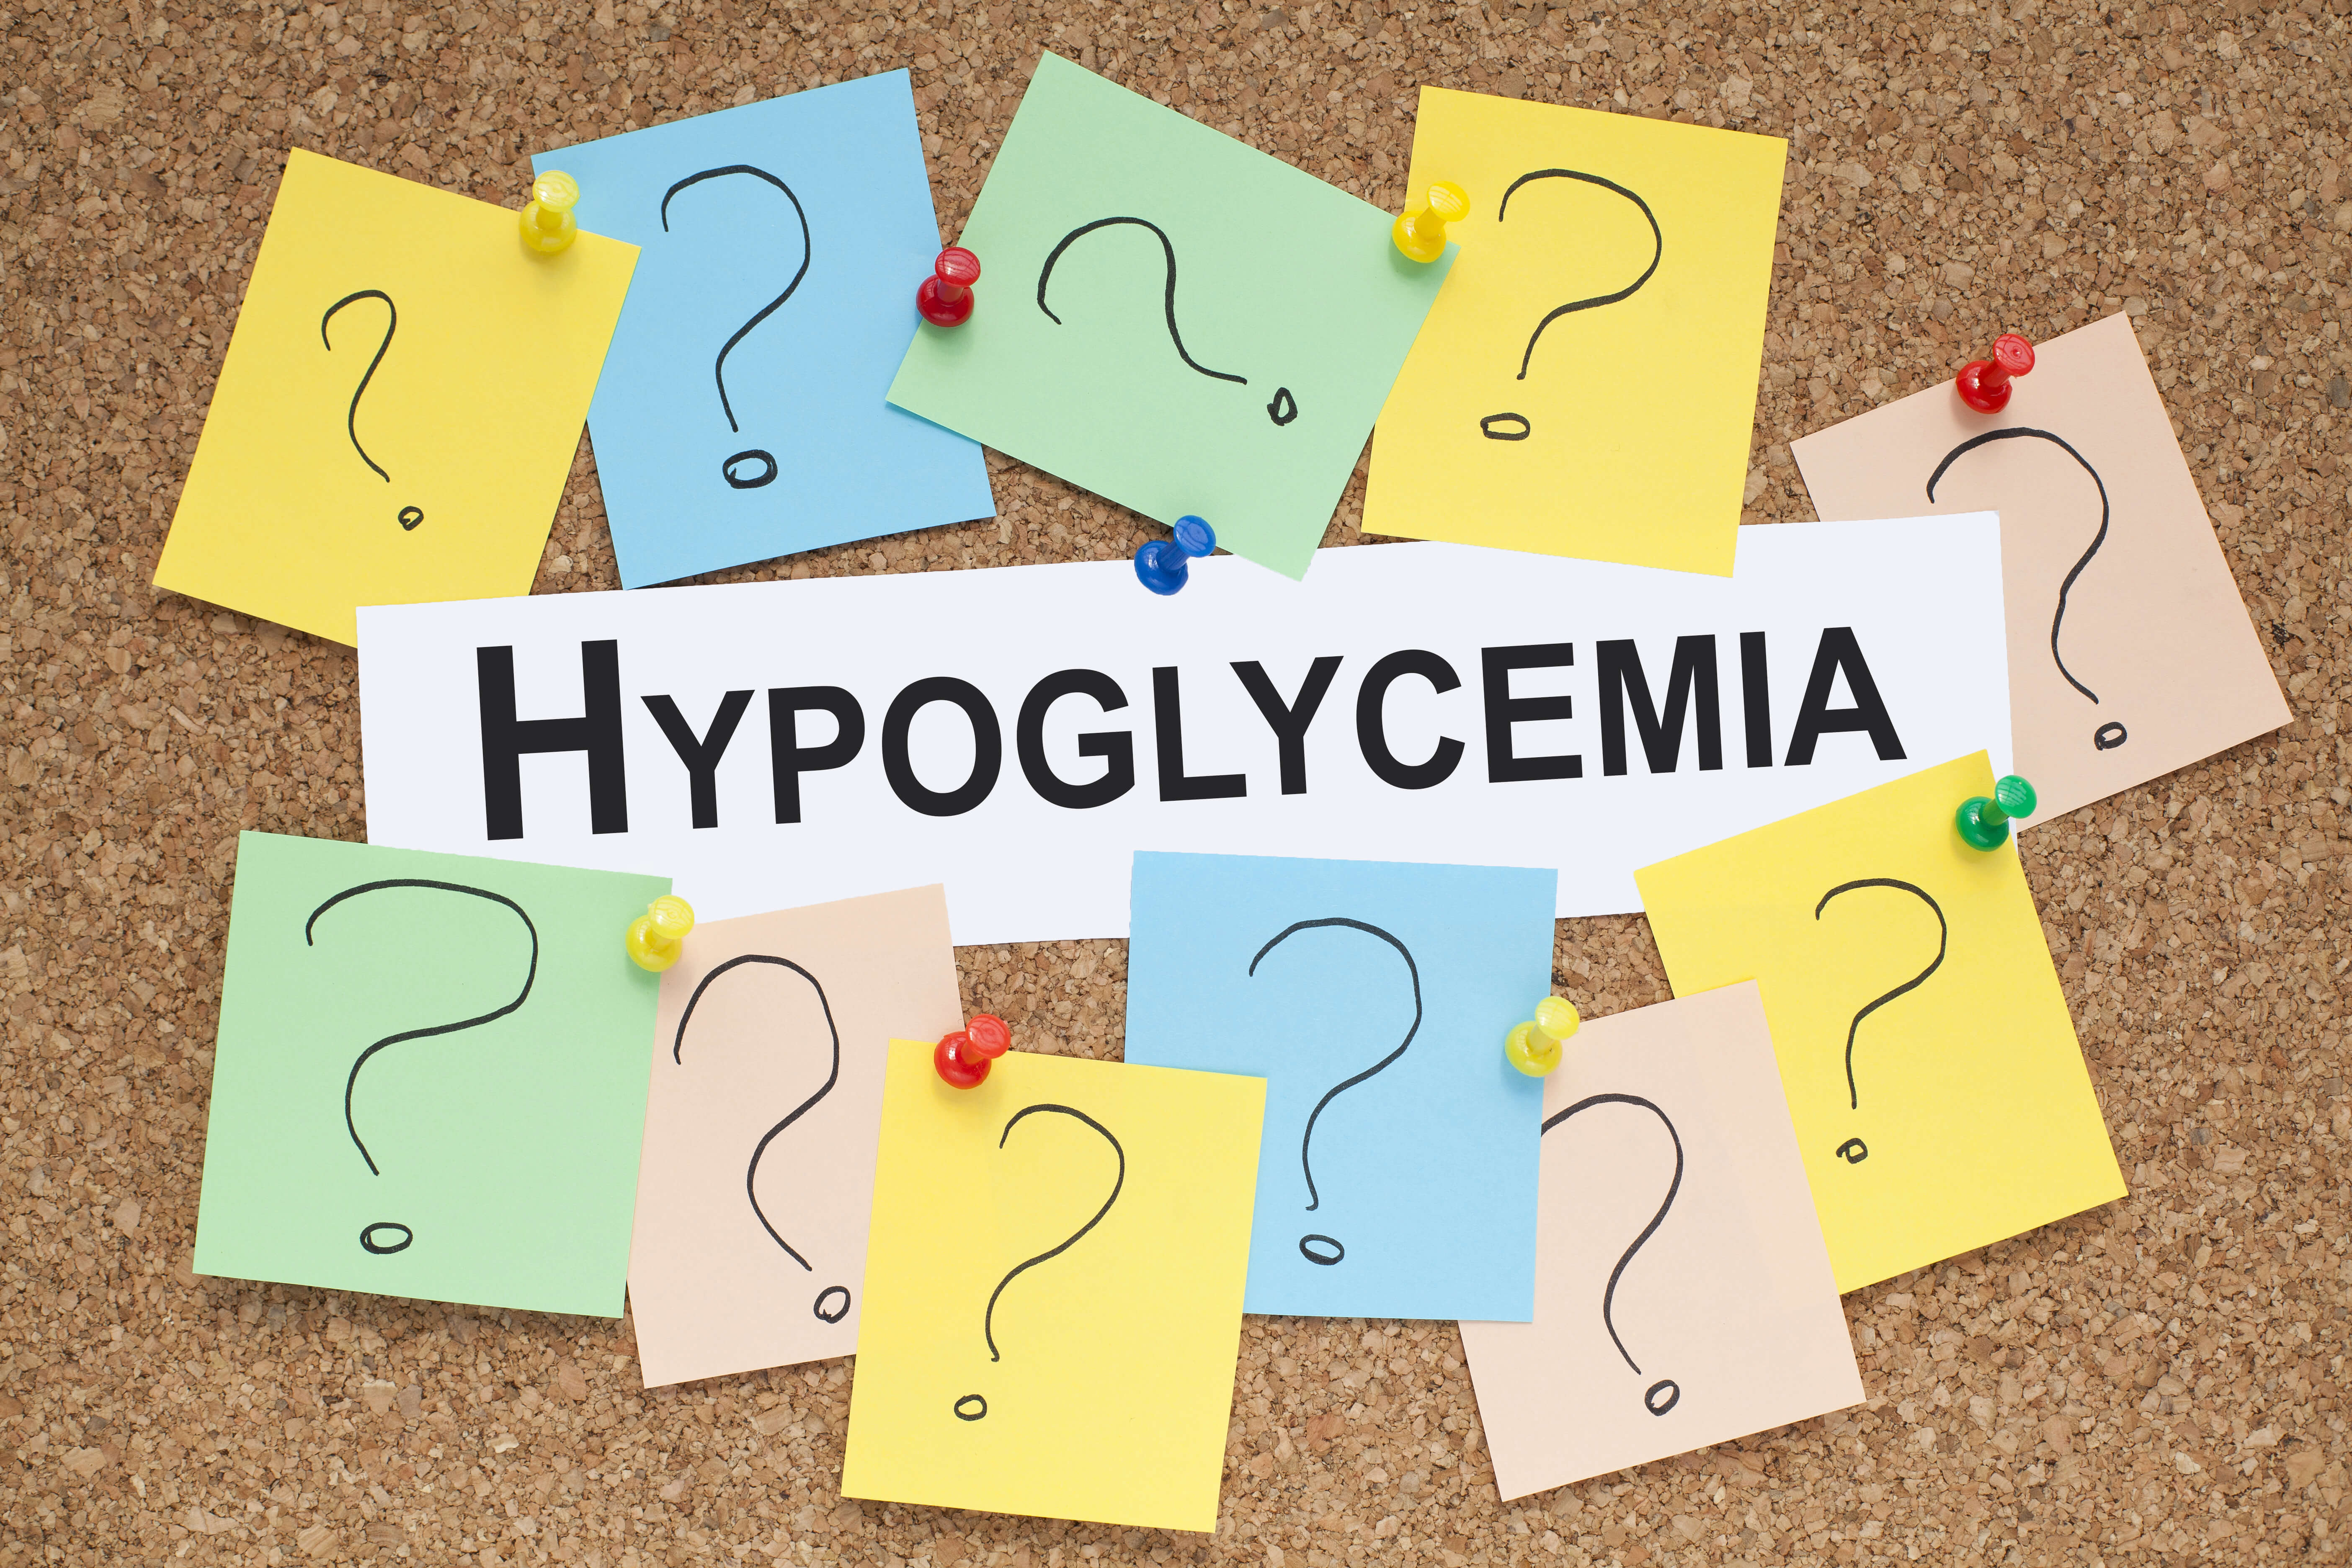 Hypoglycemia – Low blood sugar